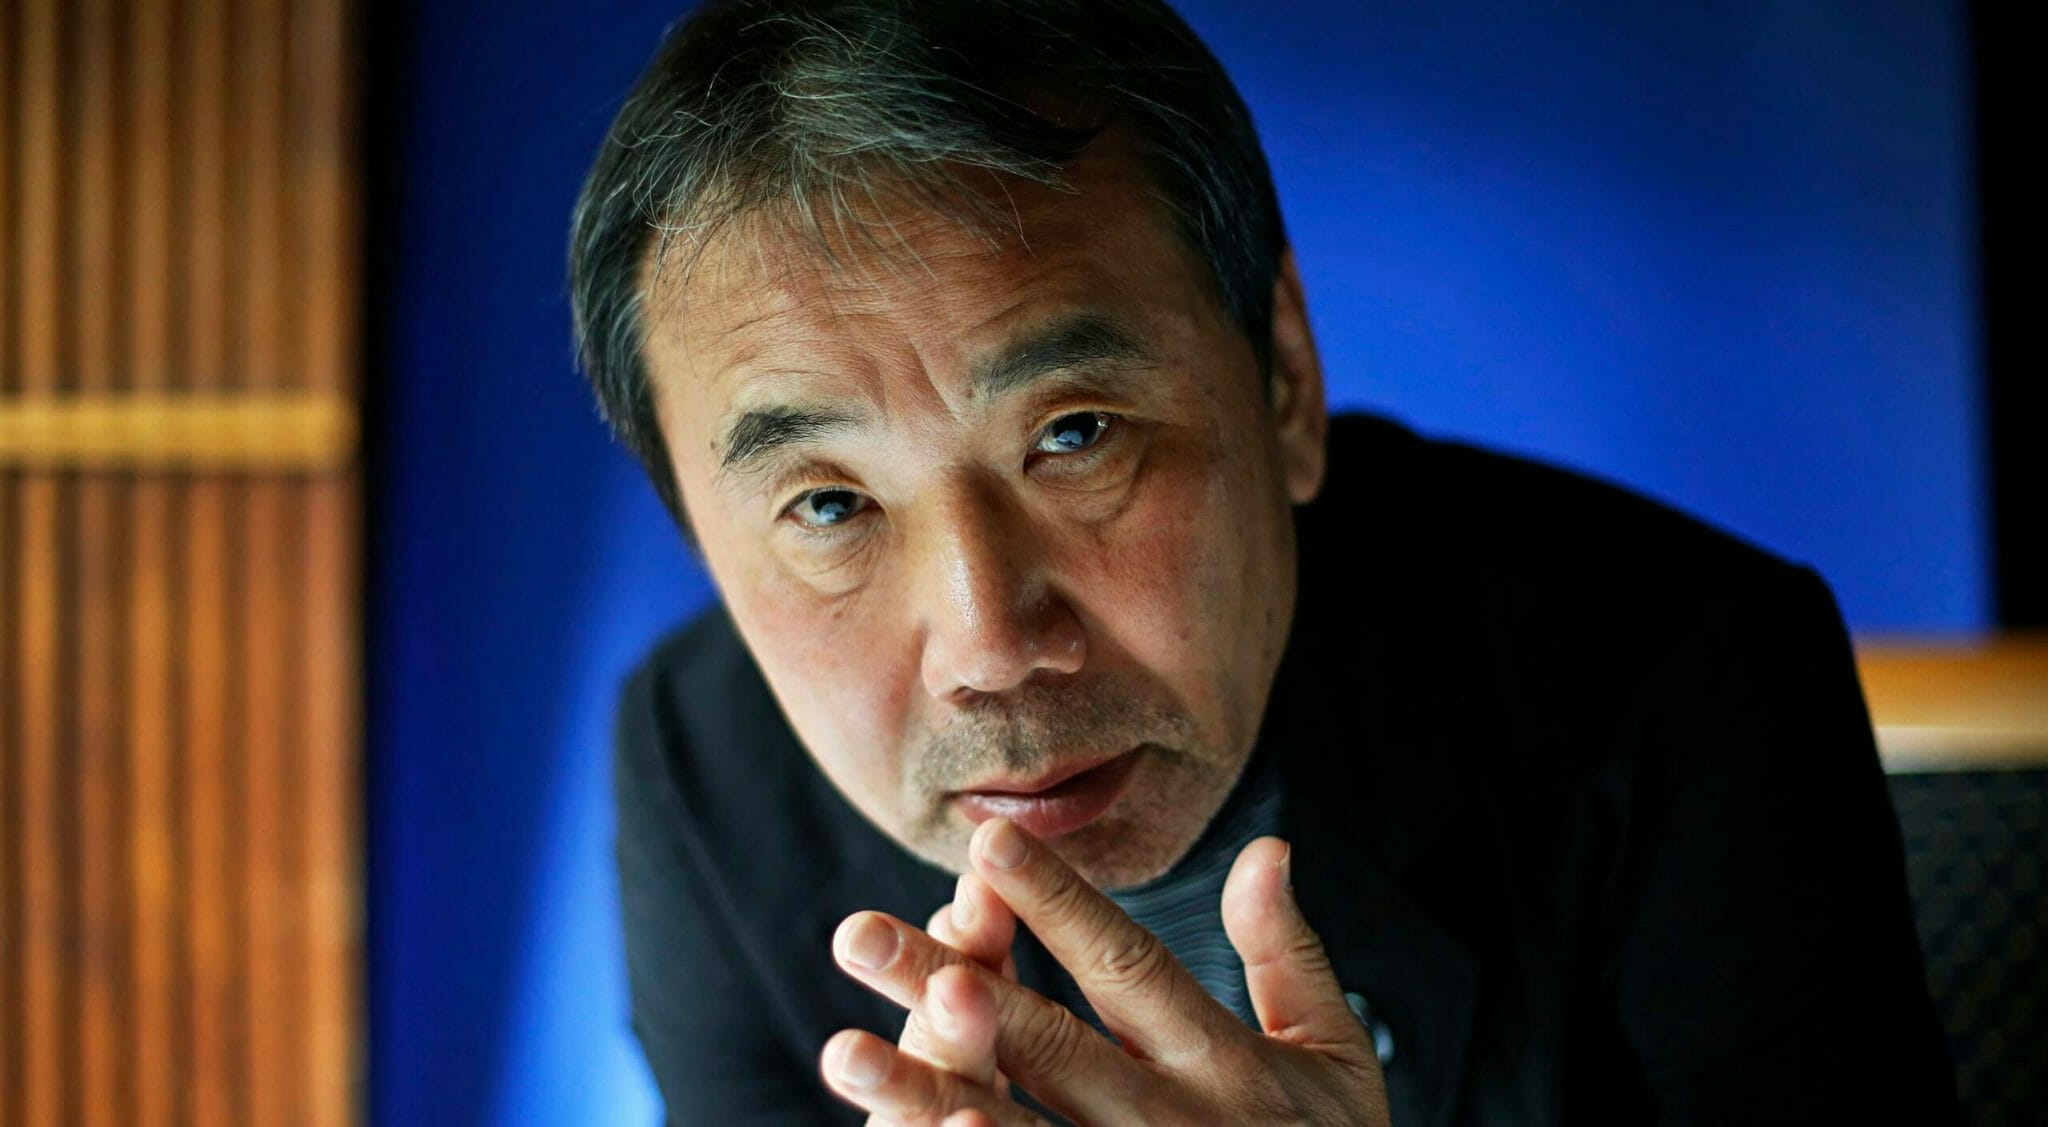 Murakami